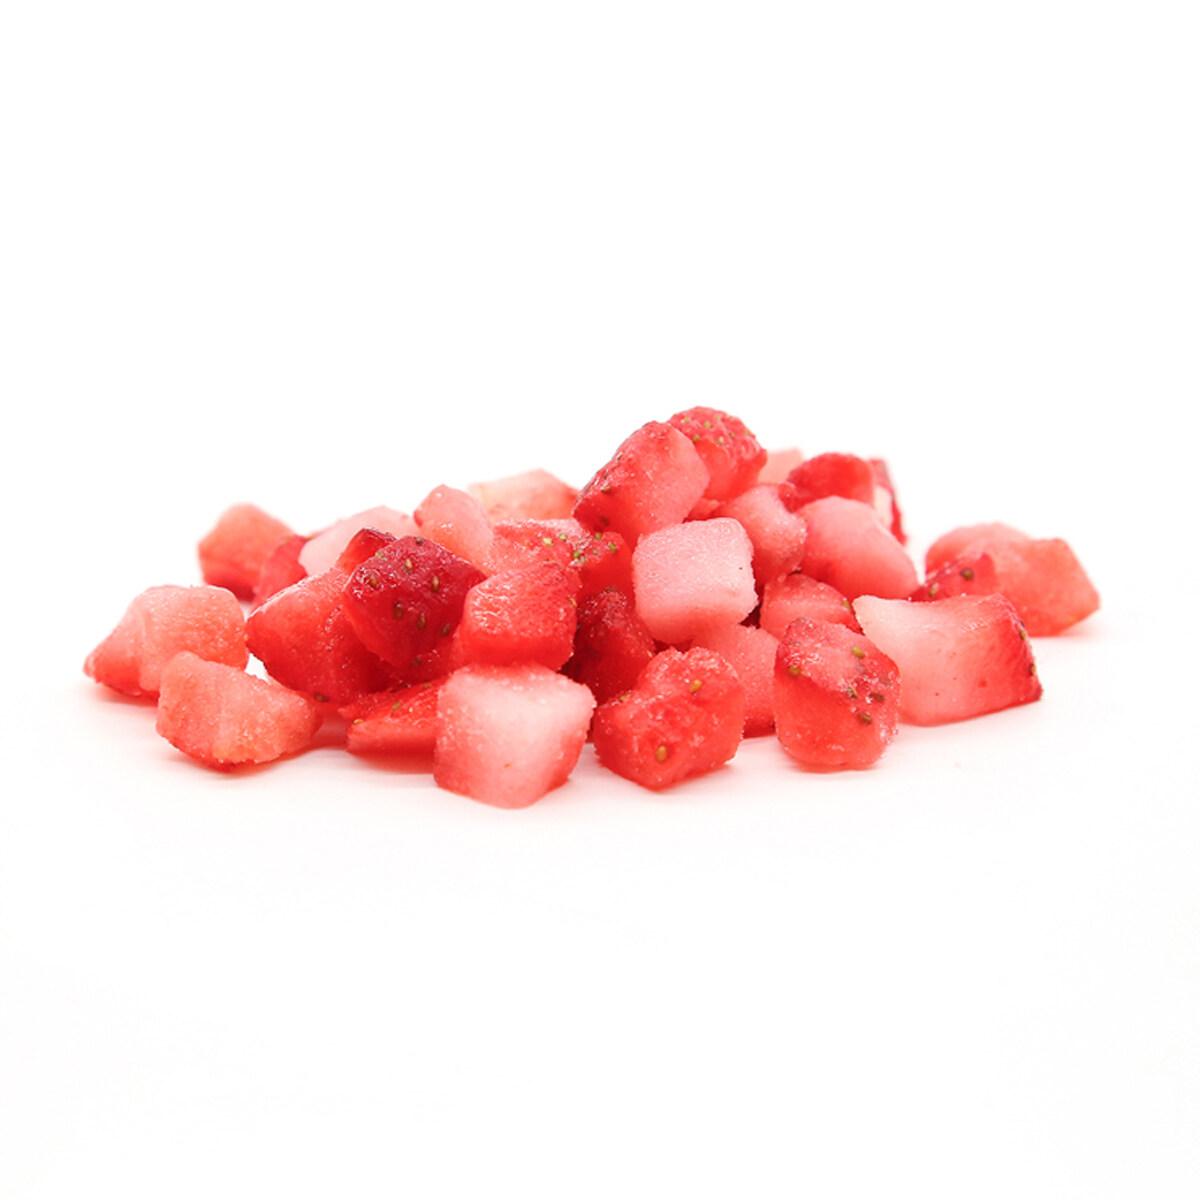 Großhandel gefrorene Lauch -Erdbeere, geschnittene gefrorene Erdbeeren OEM, gefrorene ganze Erdbeere, hochwertige gefrorene Erdungstrowberri, gefrorene Erdbeer -Dices ODM